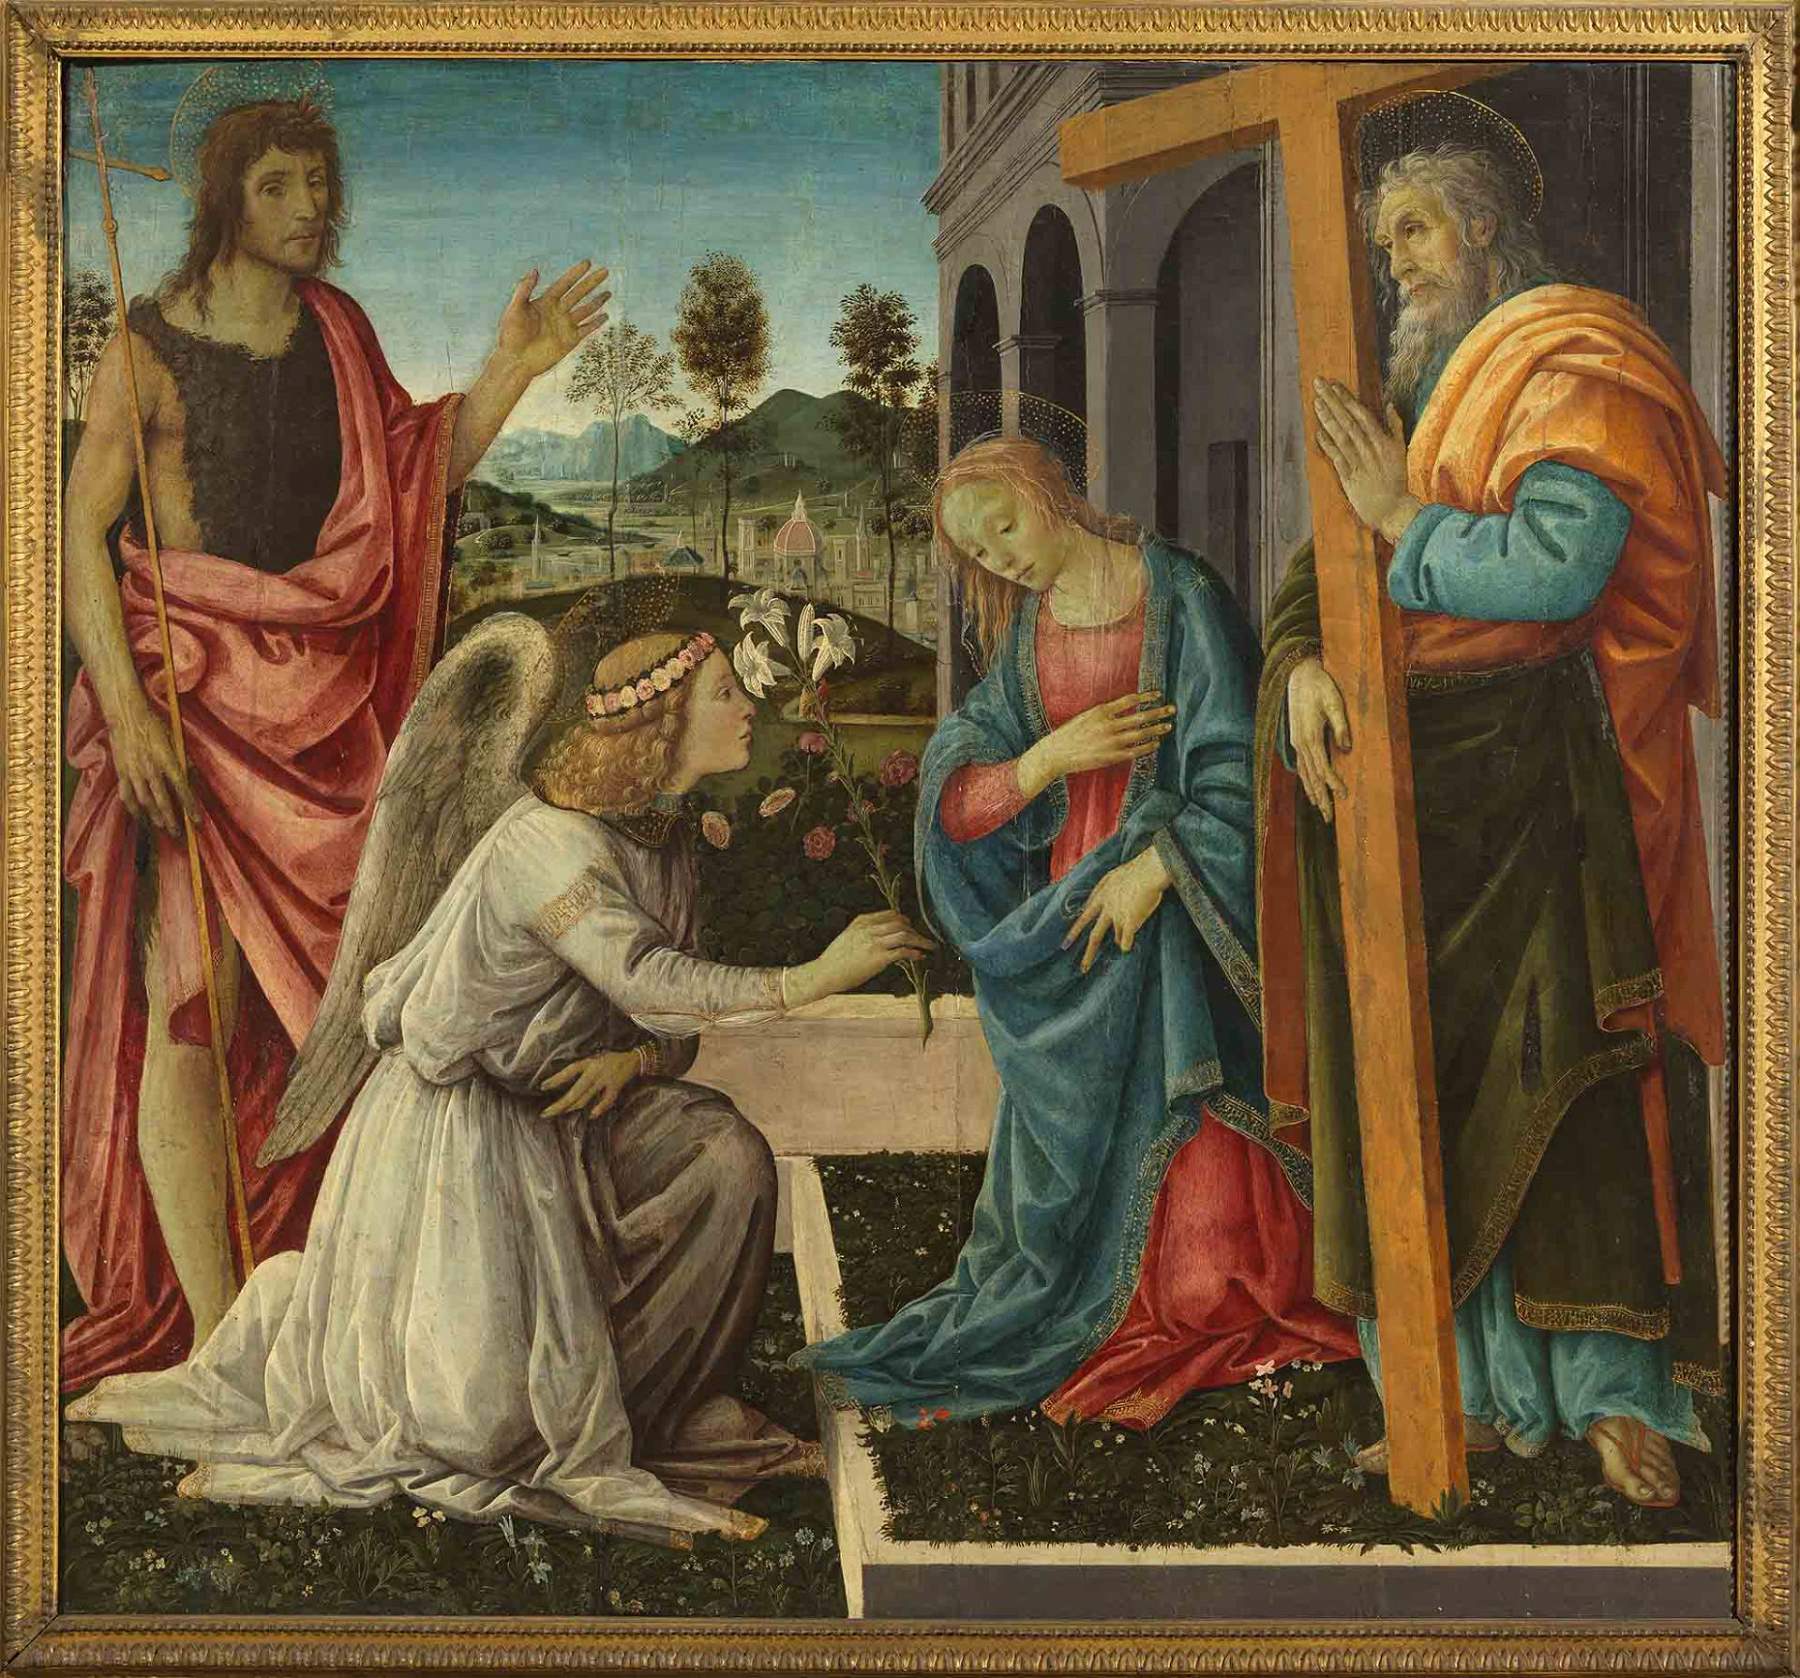 Napoli, un privato finanzia il restauro di un dipinto di Filippino Lippi del Museo di Capodimonte